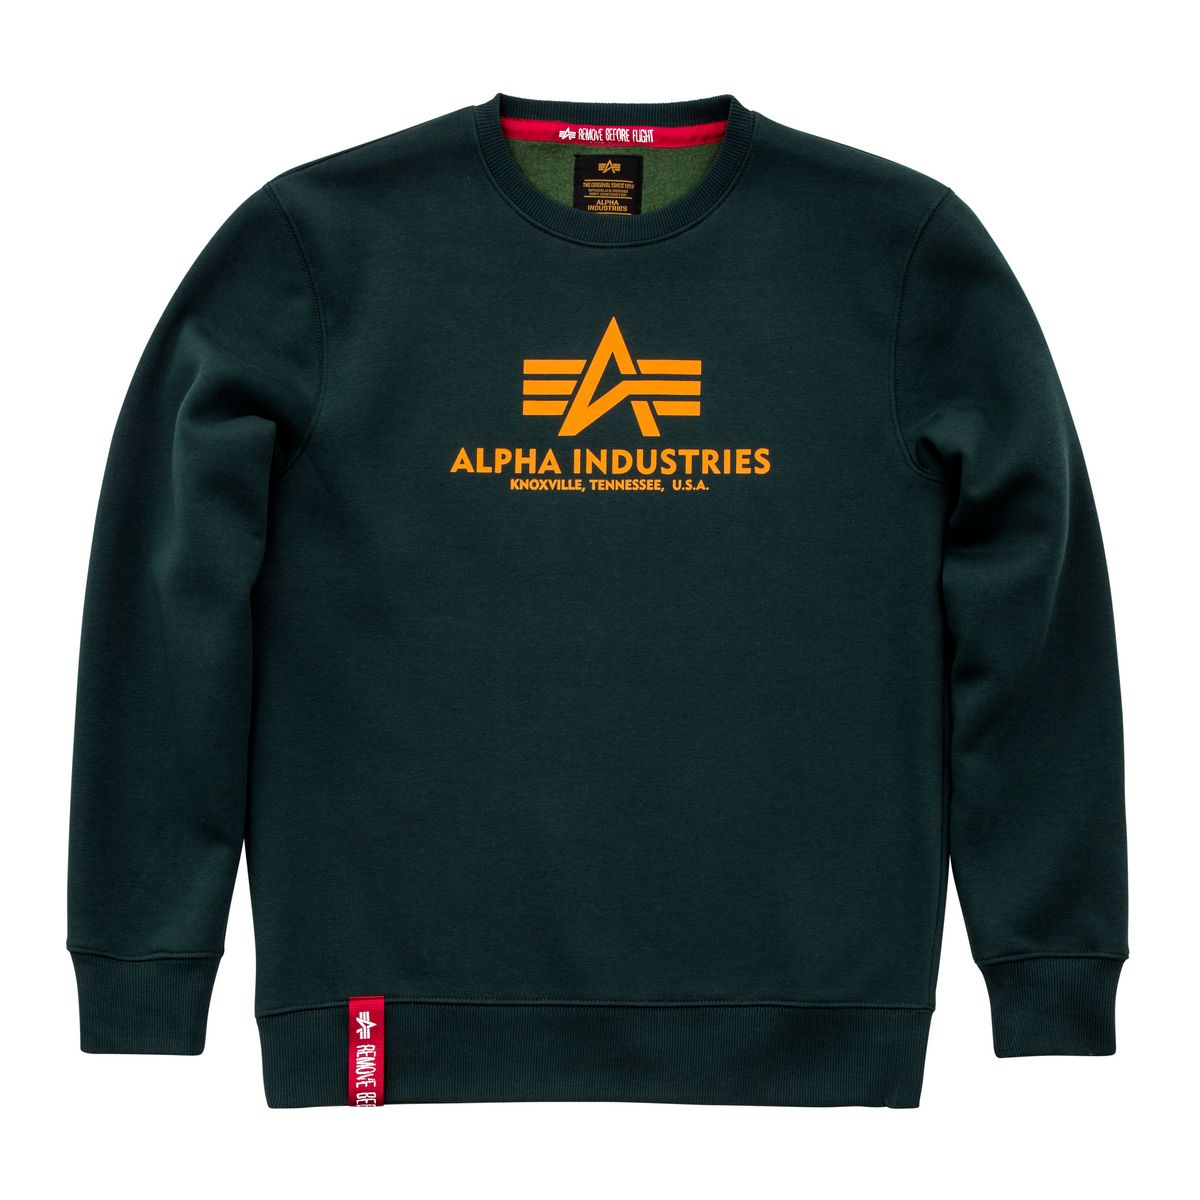 Alpha Petrol | Industries | Basic / Men Dark | Hoodies Lifestyle Sweater Sweatshirts Sweatshirts / Hoodies